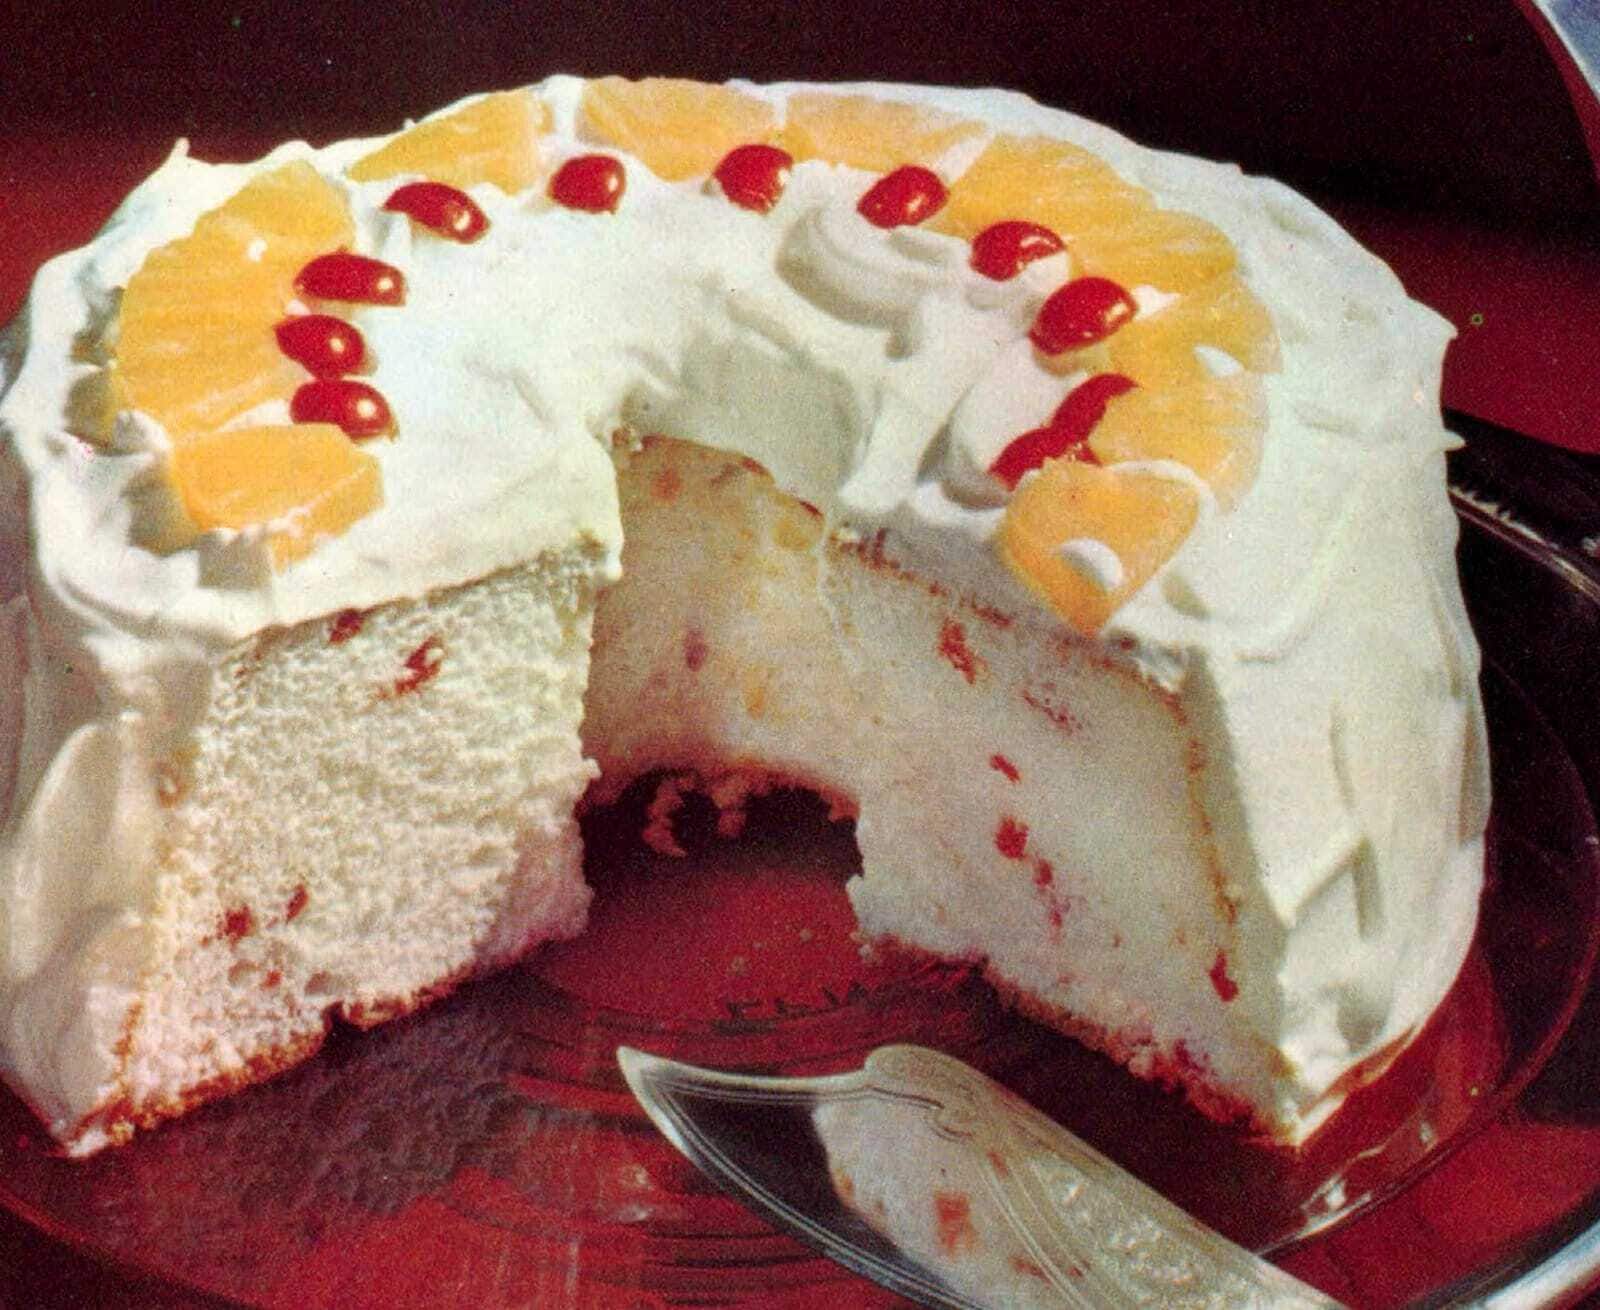 Resultado de imagem para angel food cake 1960s